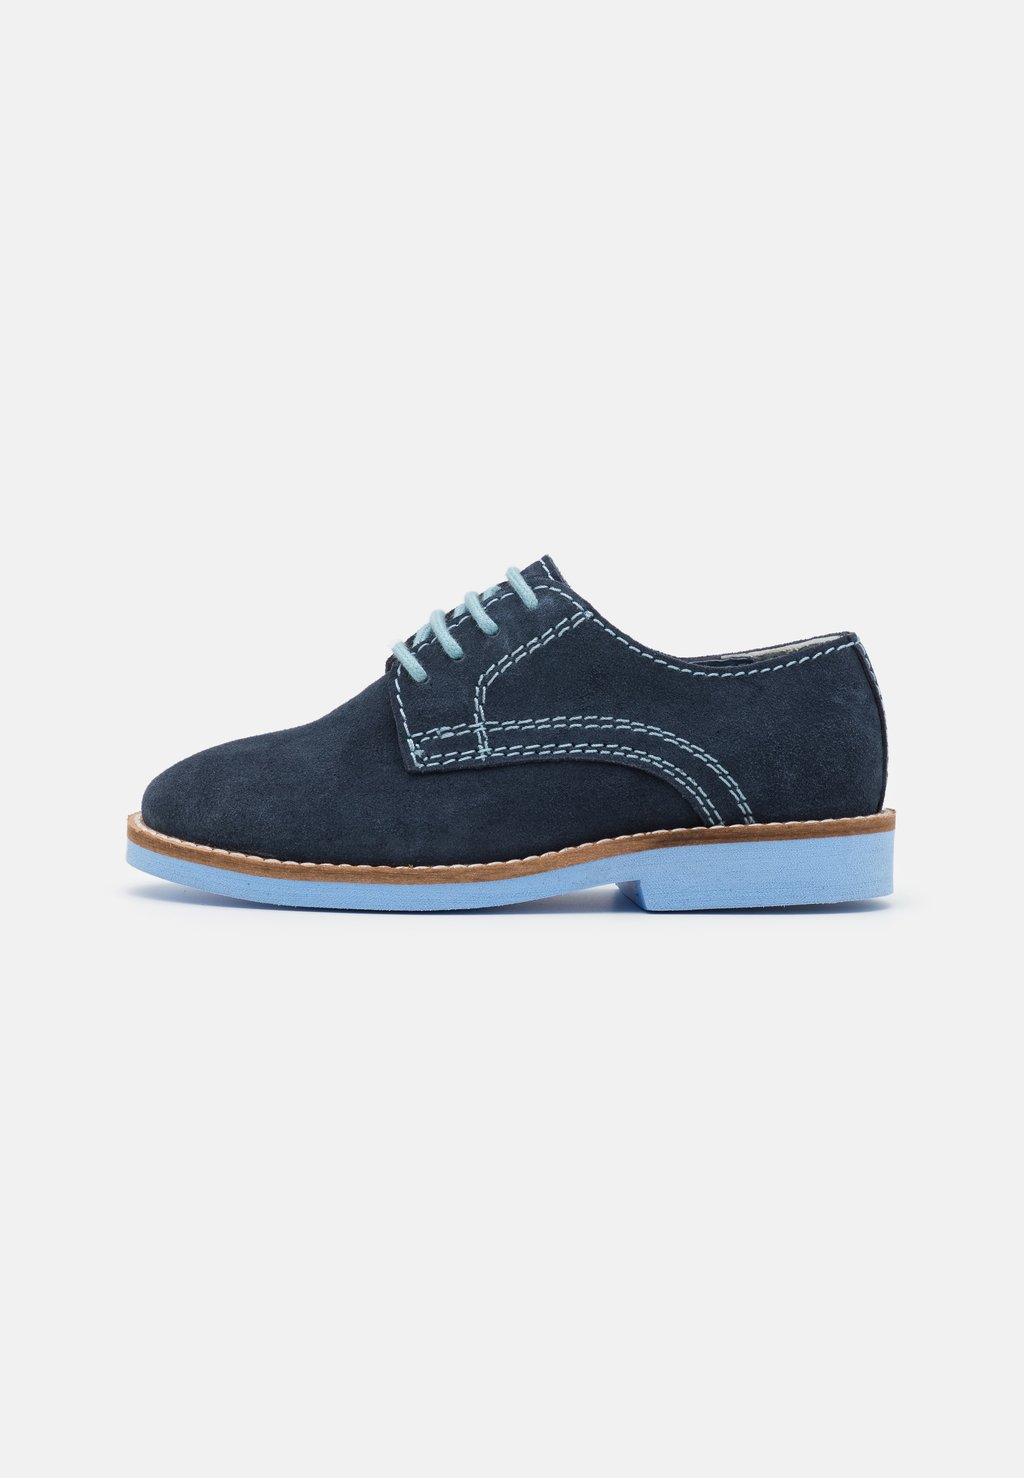 Спортивные туфли на шнуровке LEATHER Friboo, цвет dark blue спортивные туфли на шнуровке desa цвет dark blue